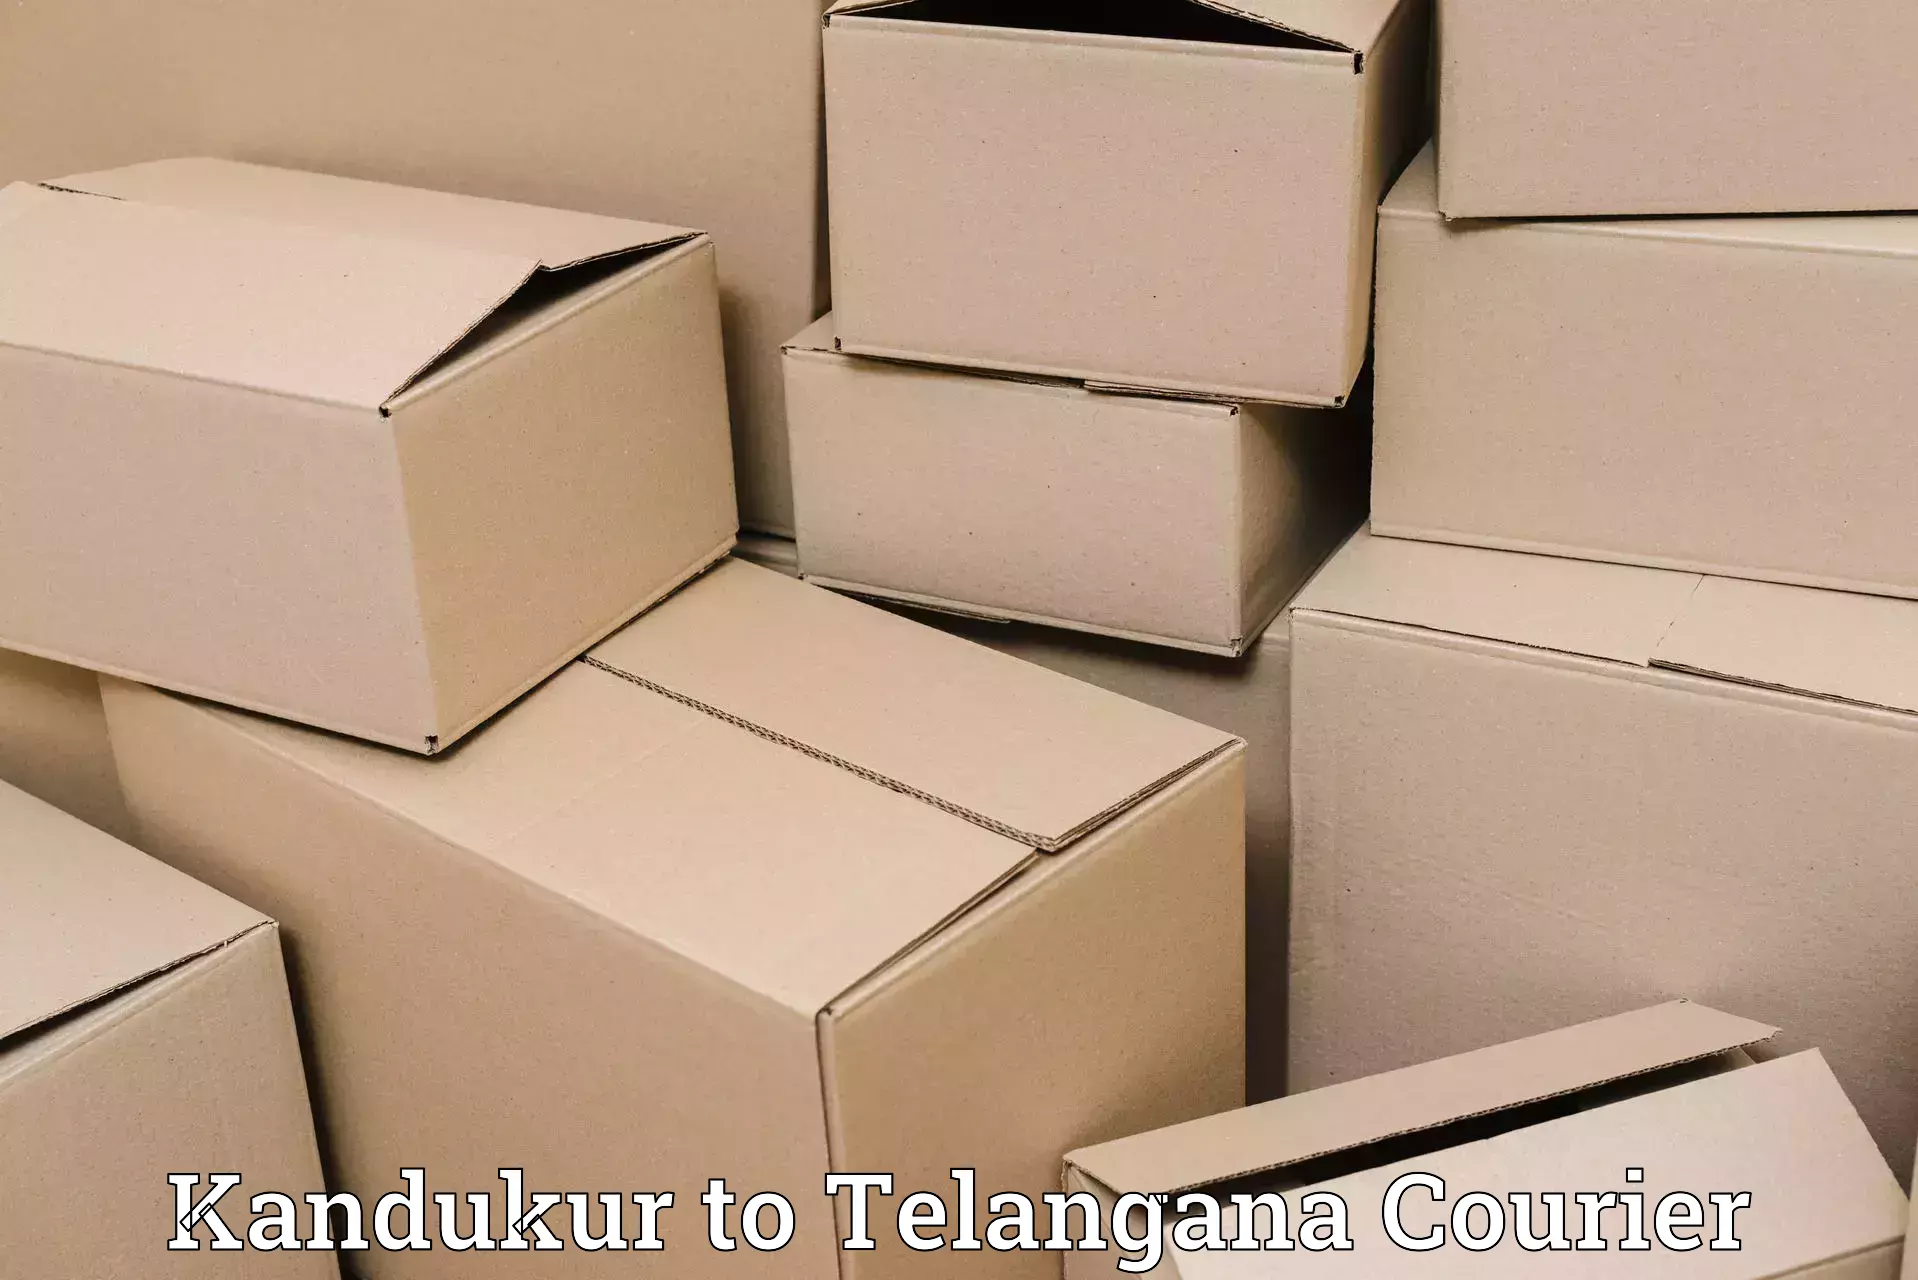 Bulk shipping discounts Kandukur to Bhuvanagiri